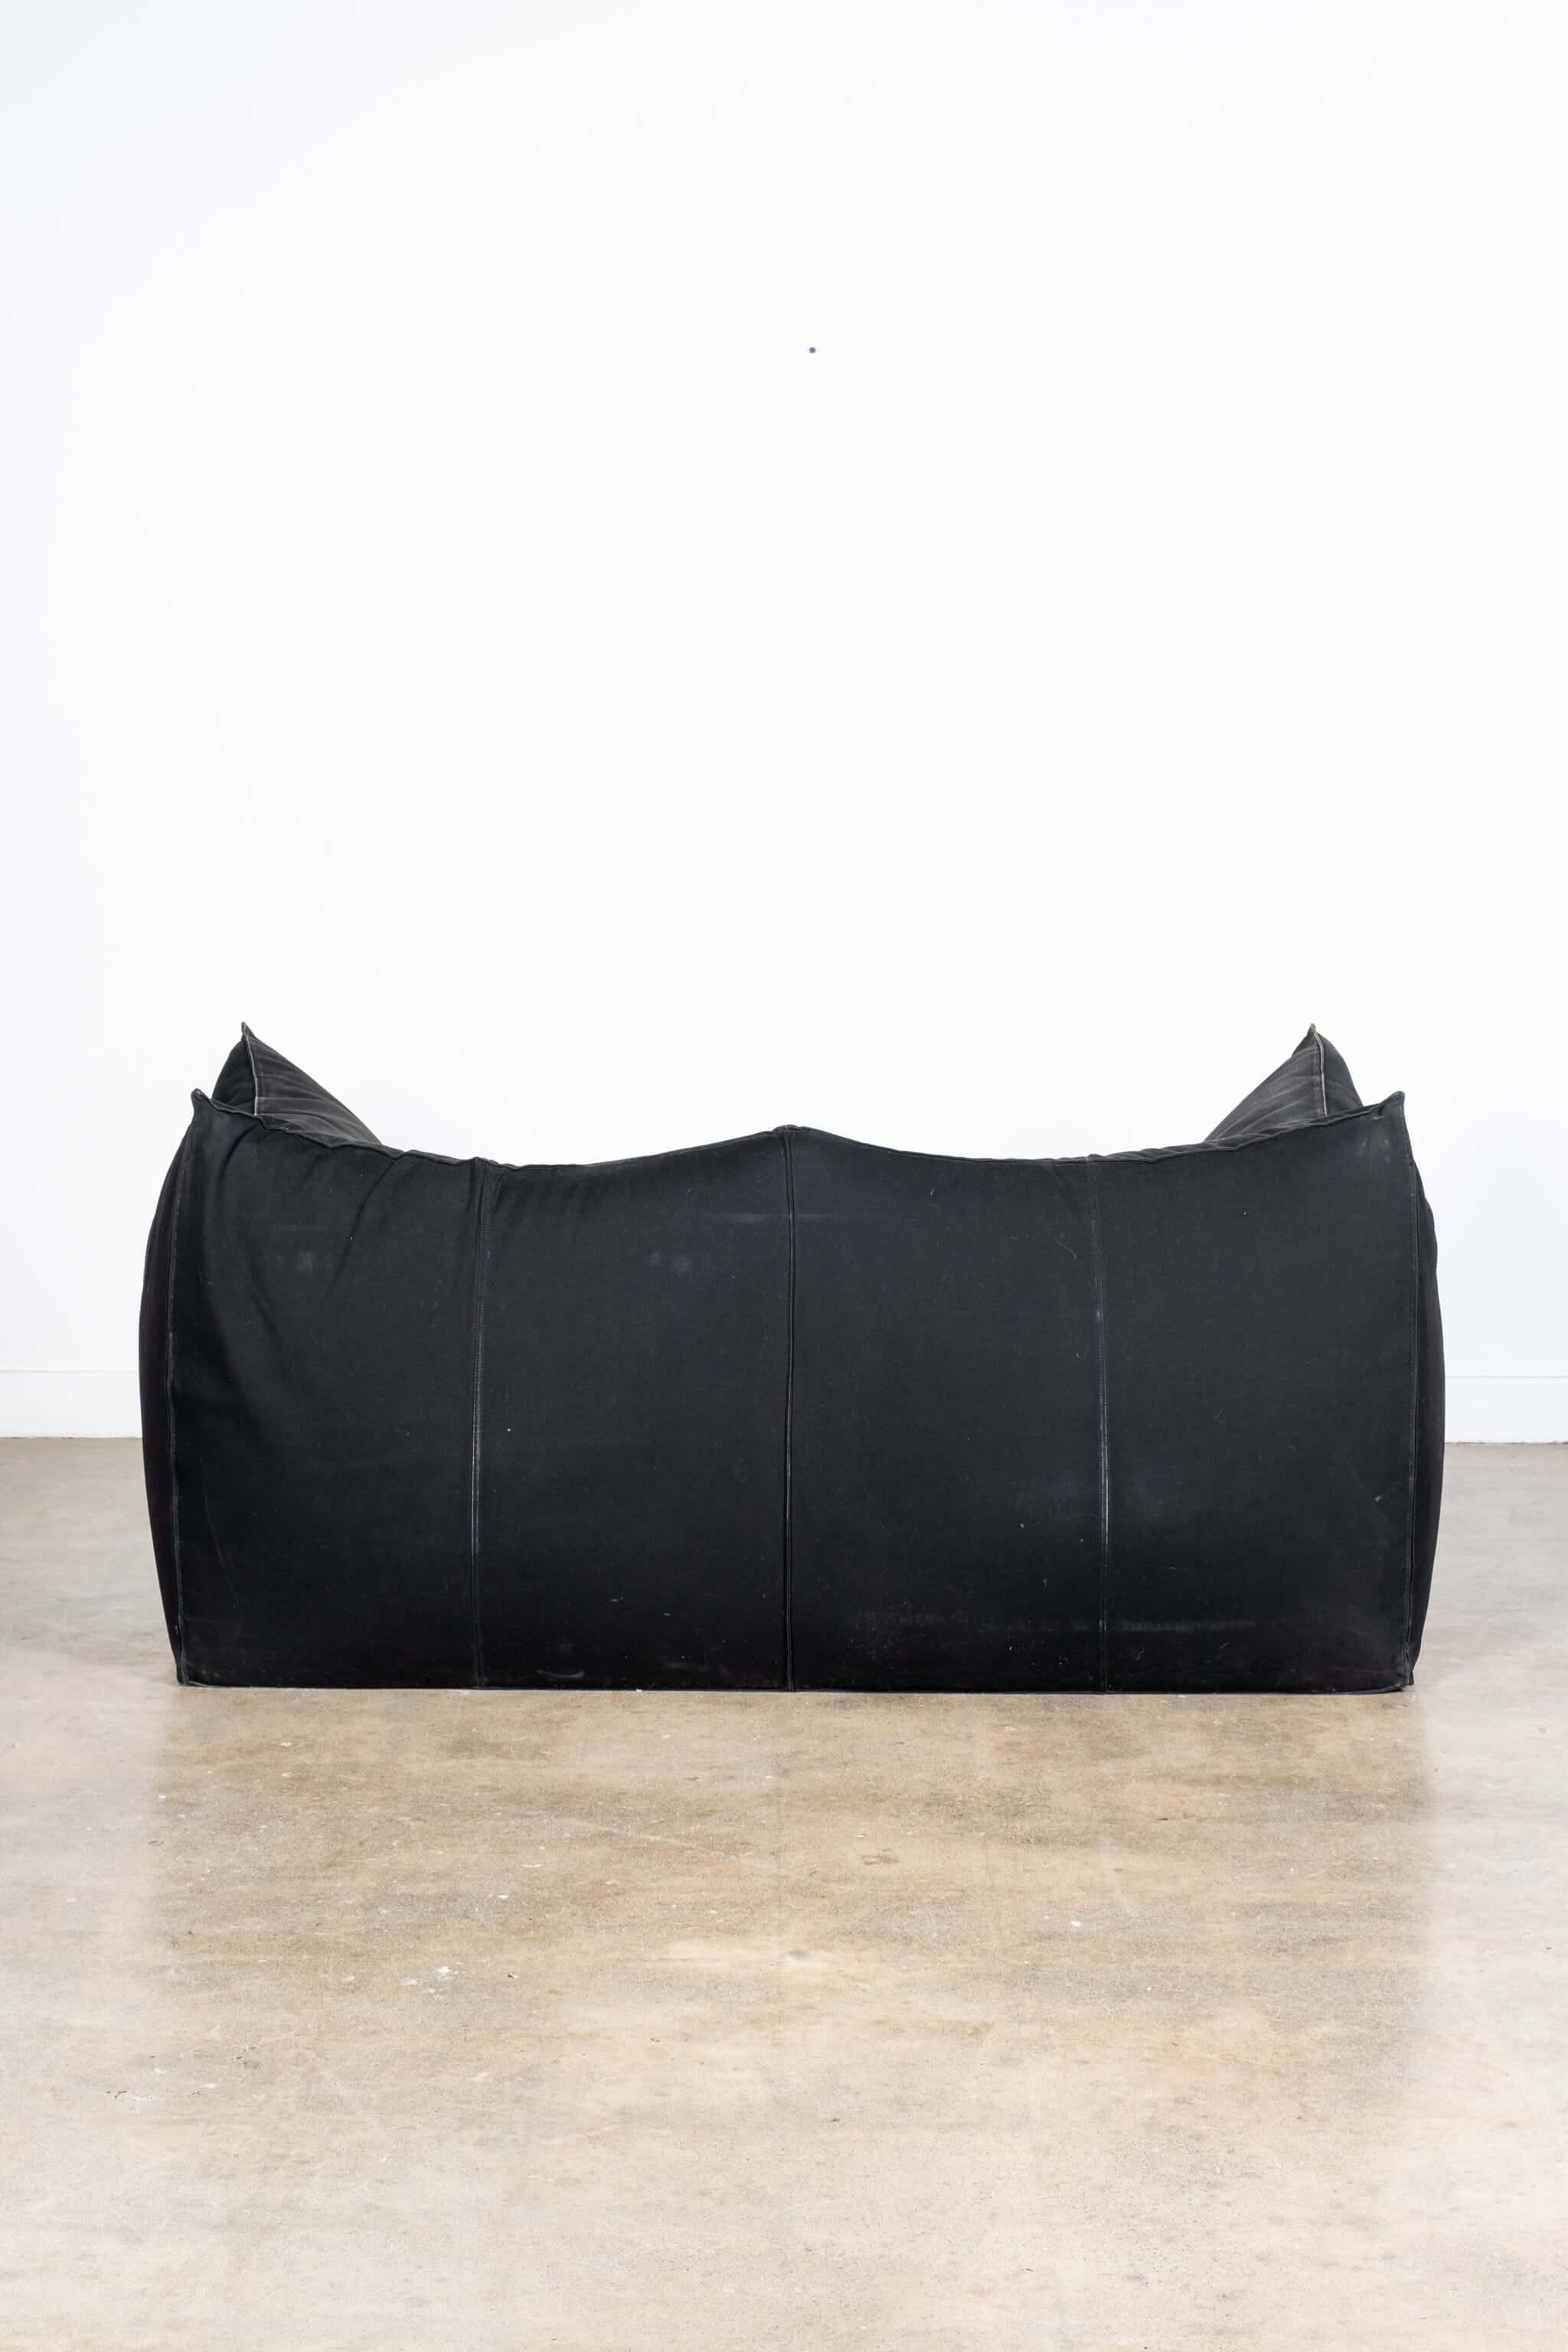 Modern Mario Bellini Le Bambole 2-Seater Sofa, B&B Italia For Sale